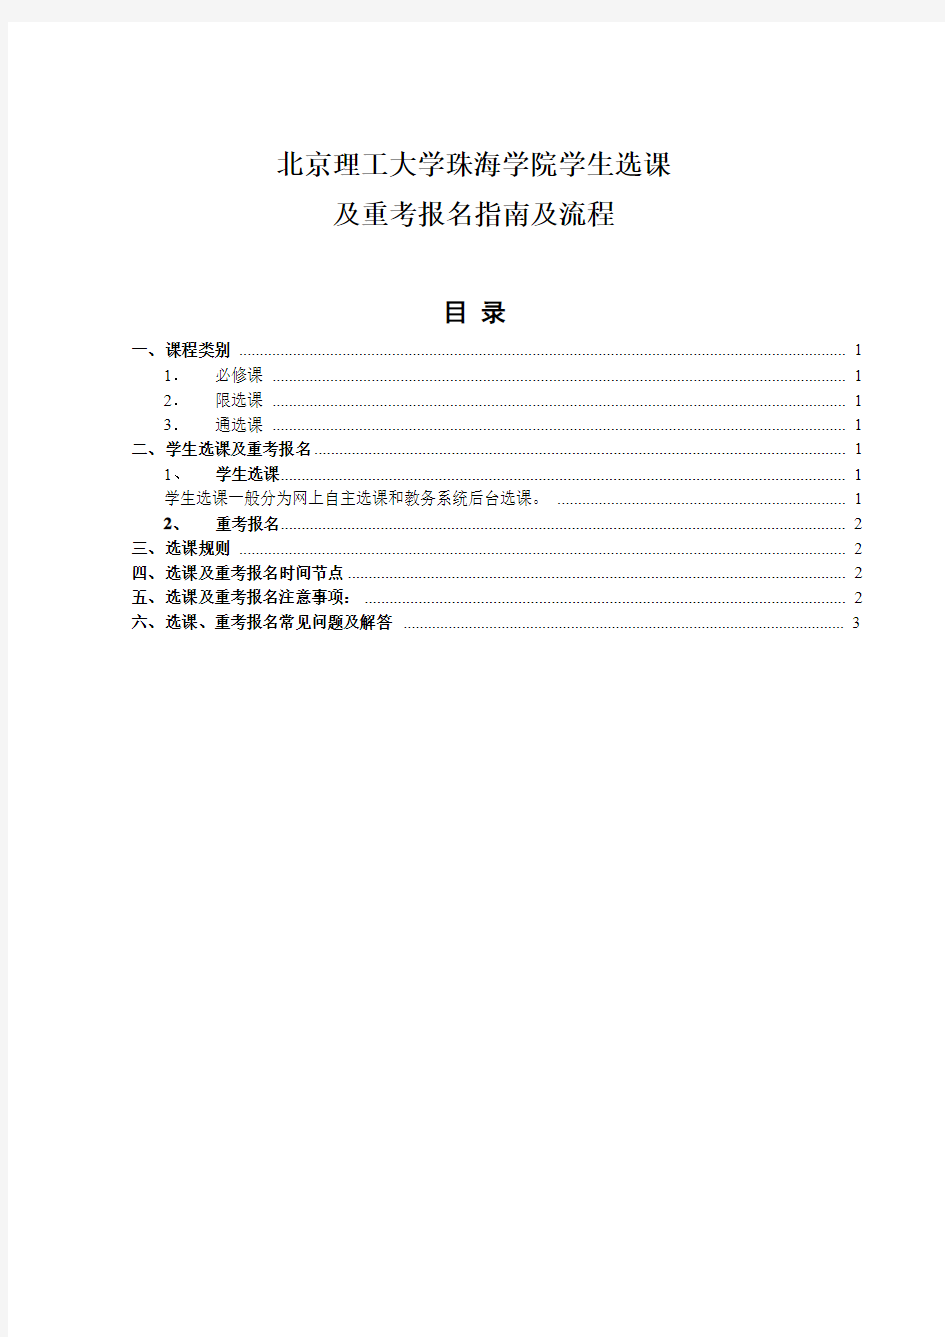 北京理工大学珠海学院学生选课及重考报名指南及流程